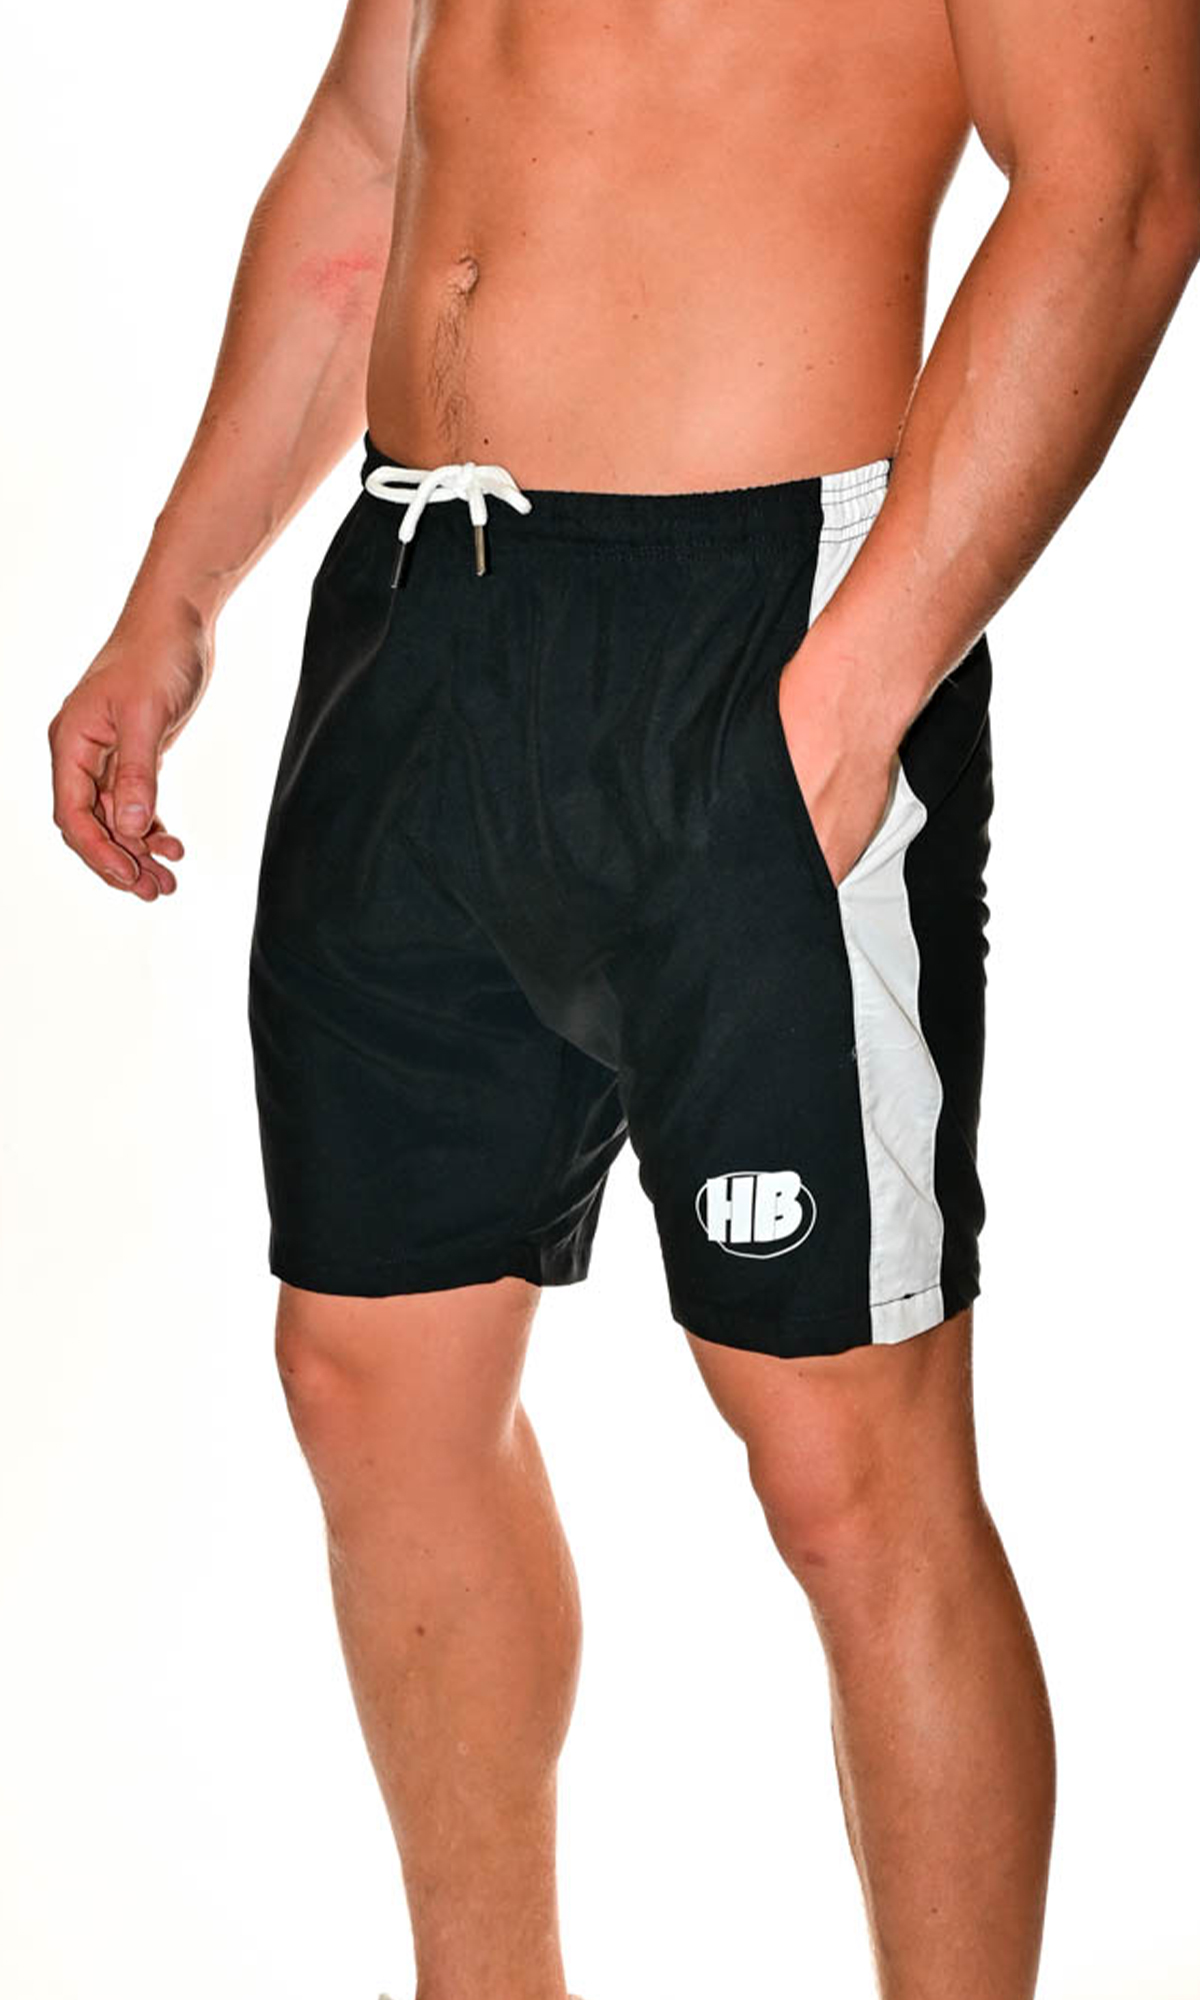 black-shorts-mens-hb-boxing